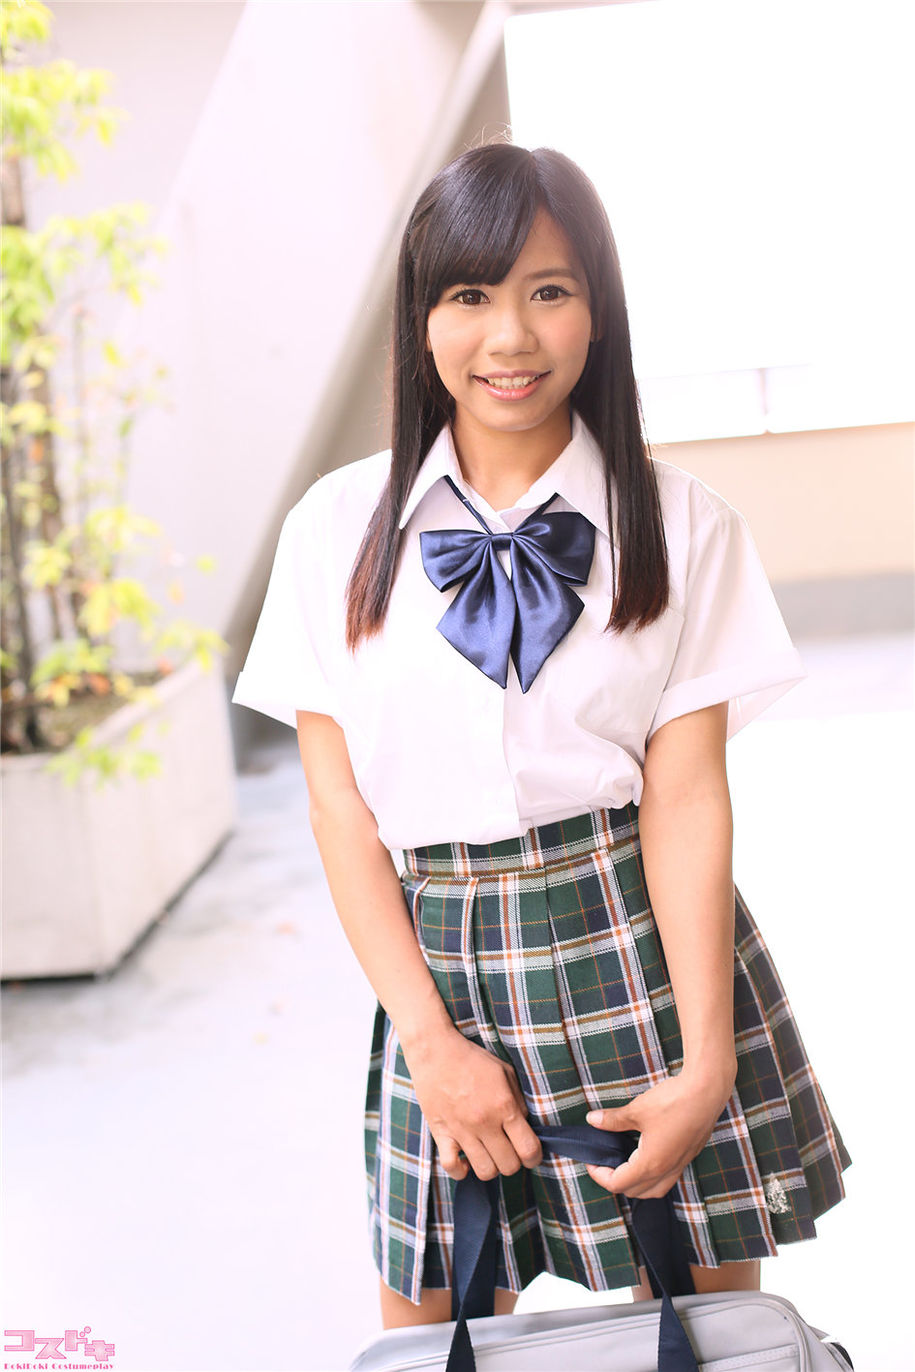 日本少女学生妹ルナ制服图片高清(第3页)